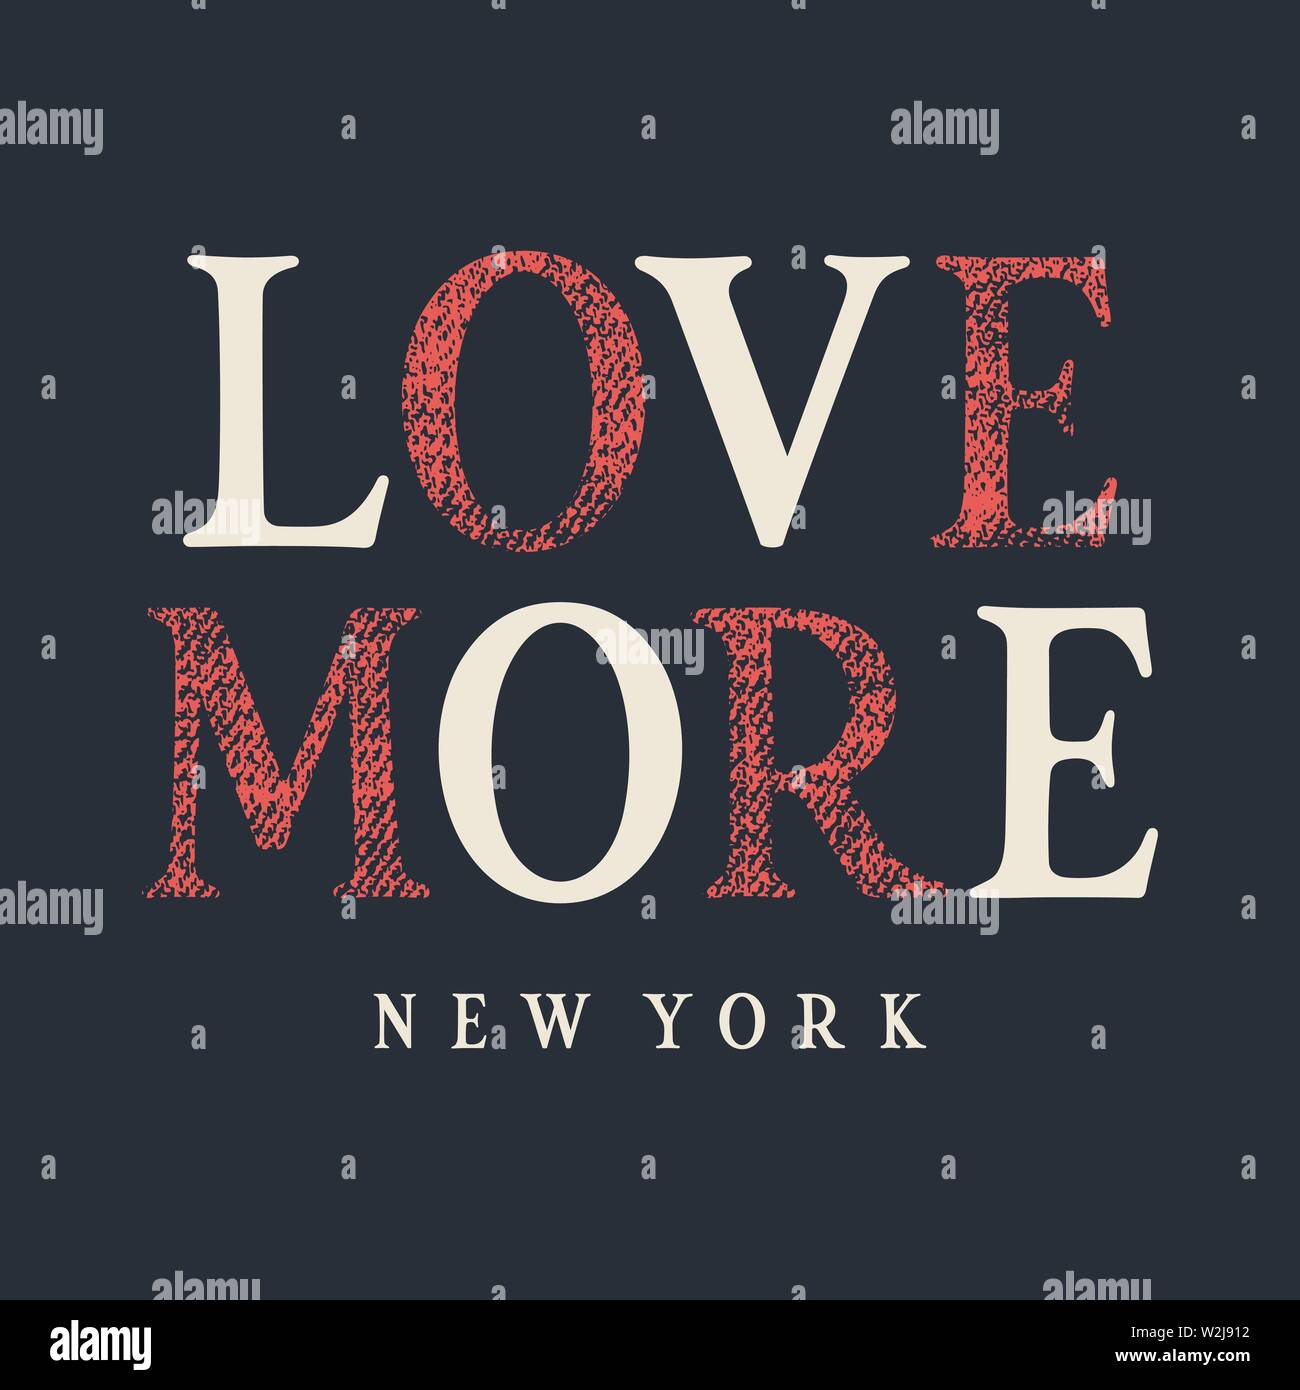 Typographie T-shirt design. Graphic Tee à la mode. L'amour plus New York Grunge Textured lettrage. Vecteurs Illustration de Vecteur